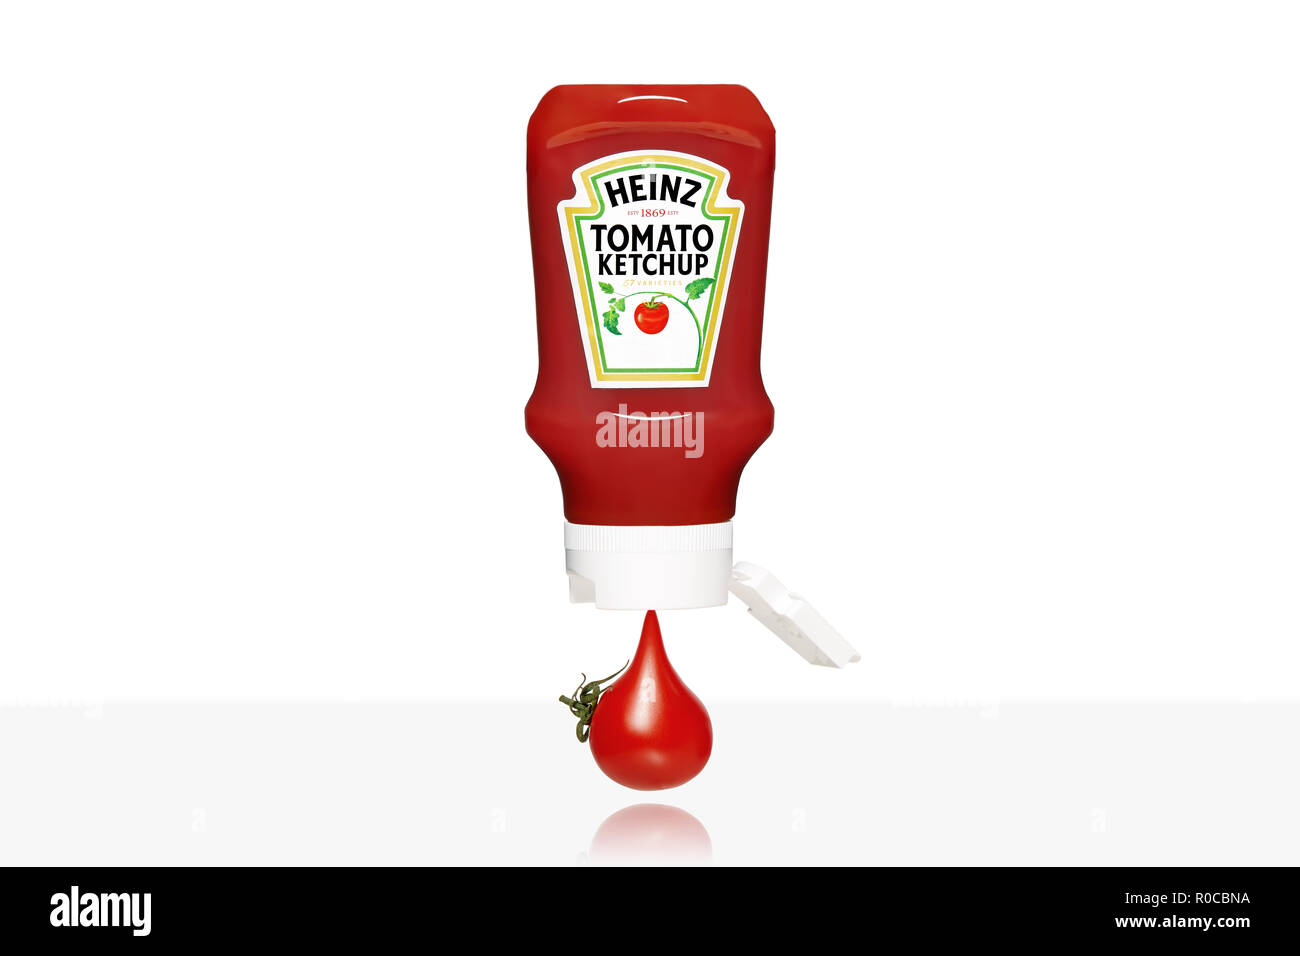 Tomate cerise qui s'écoule de la bouteille de ketchup Heinz isolé sur fond blanc. Banque D'Images